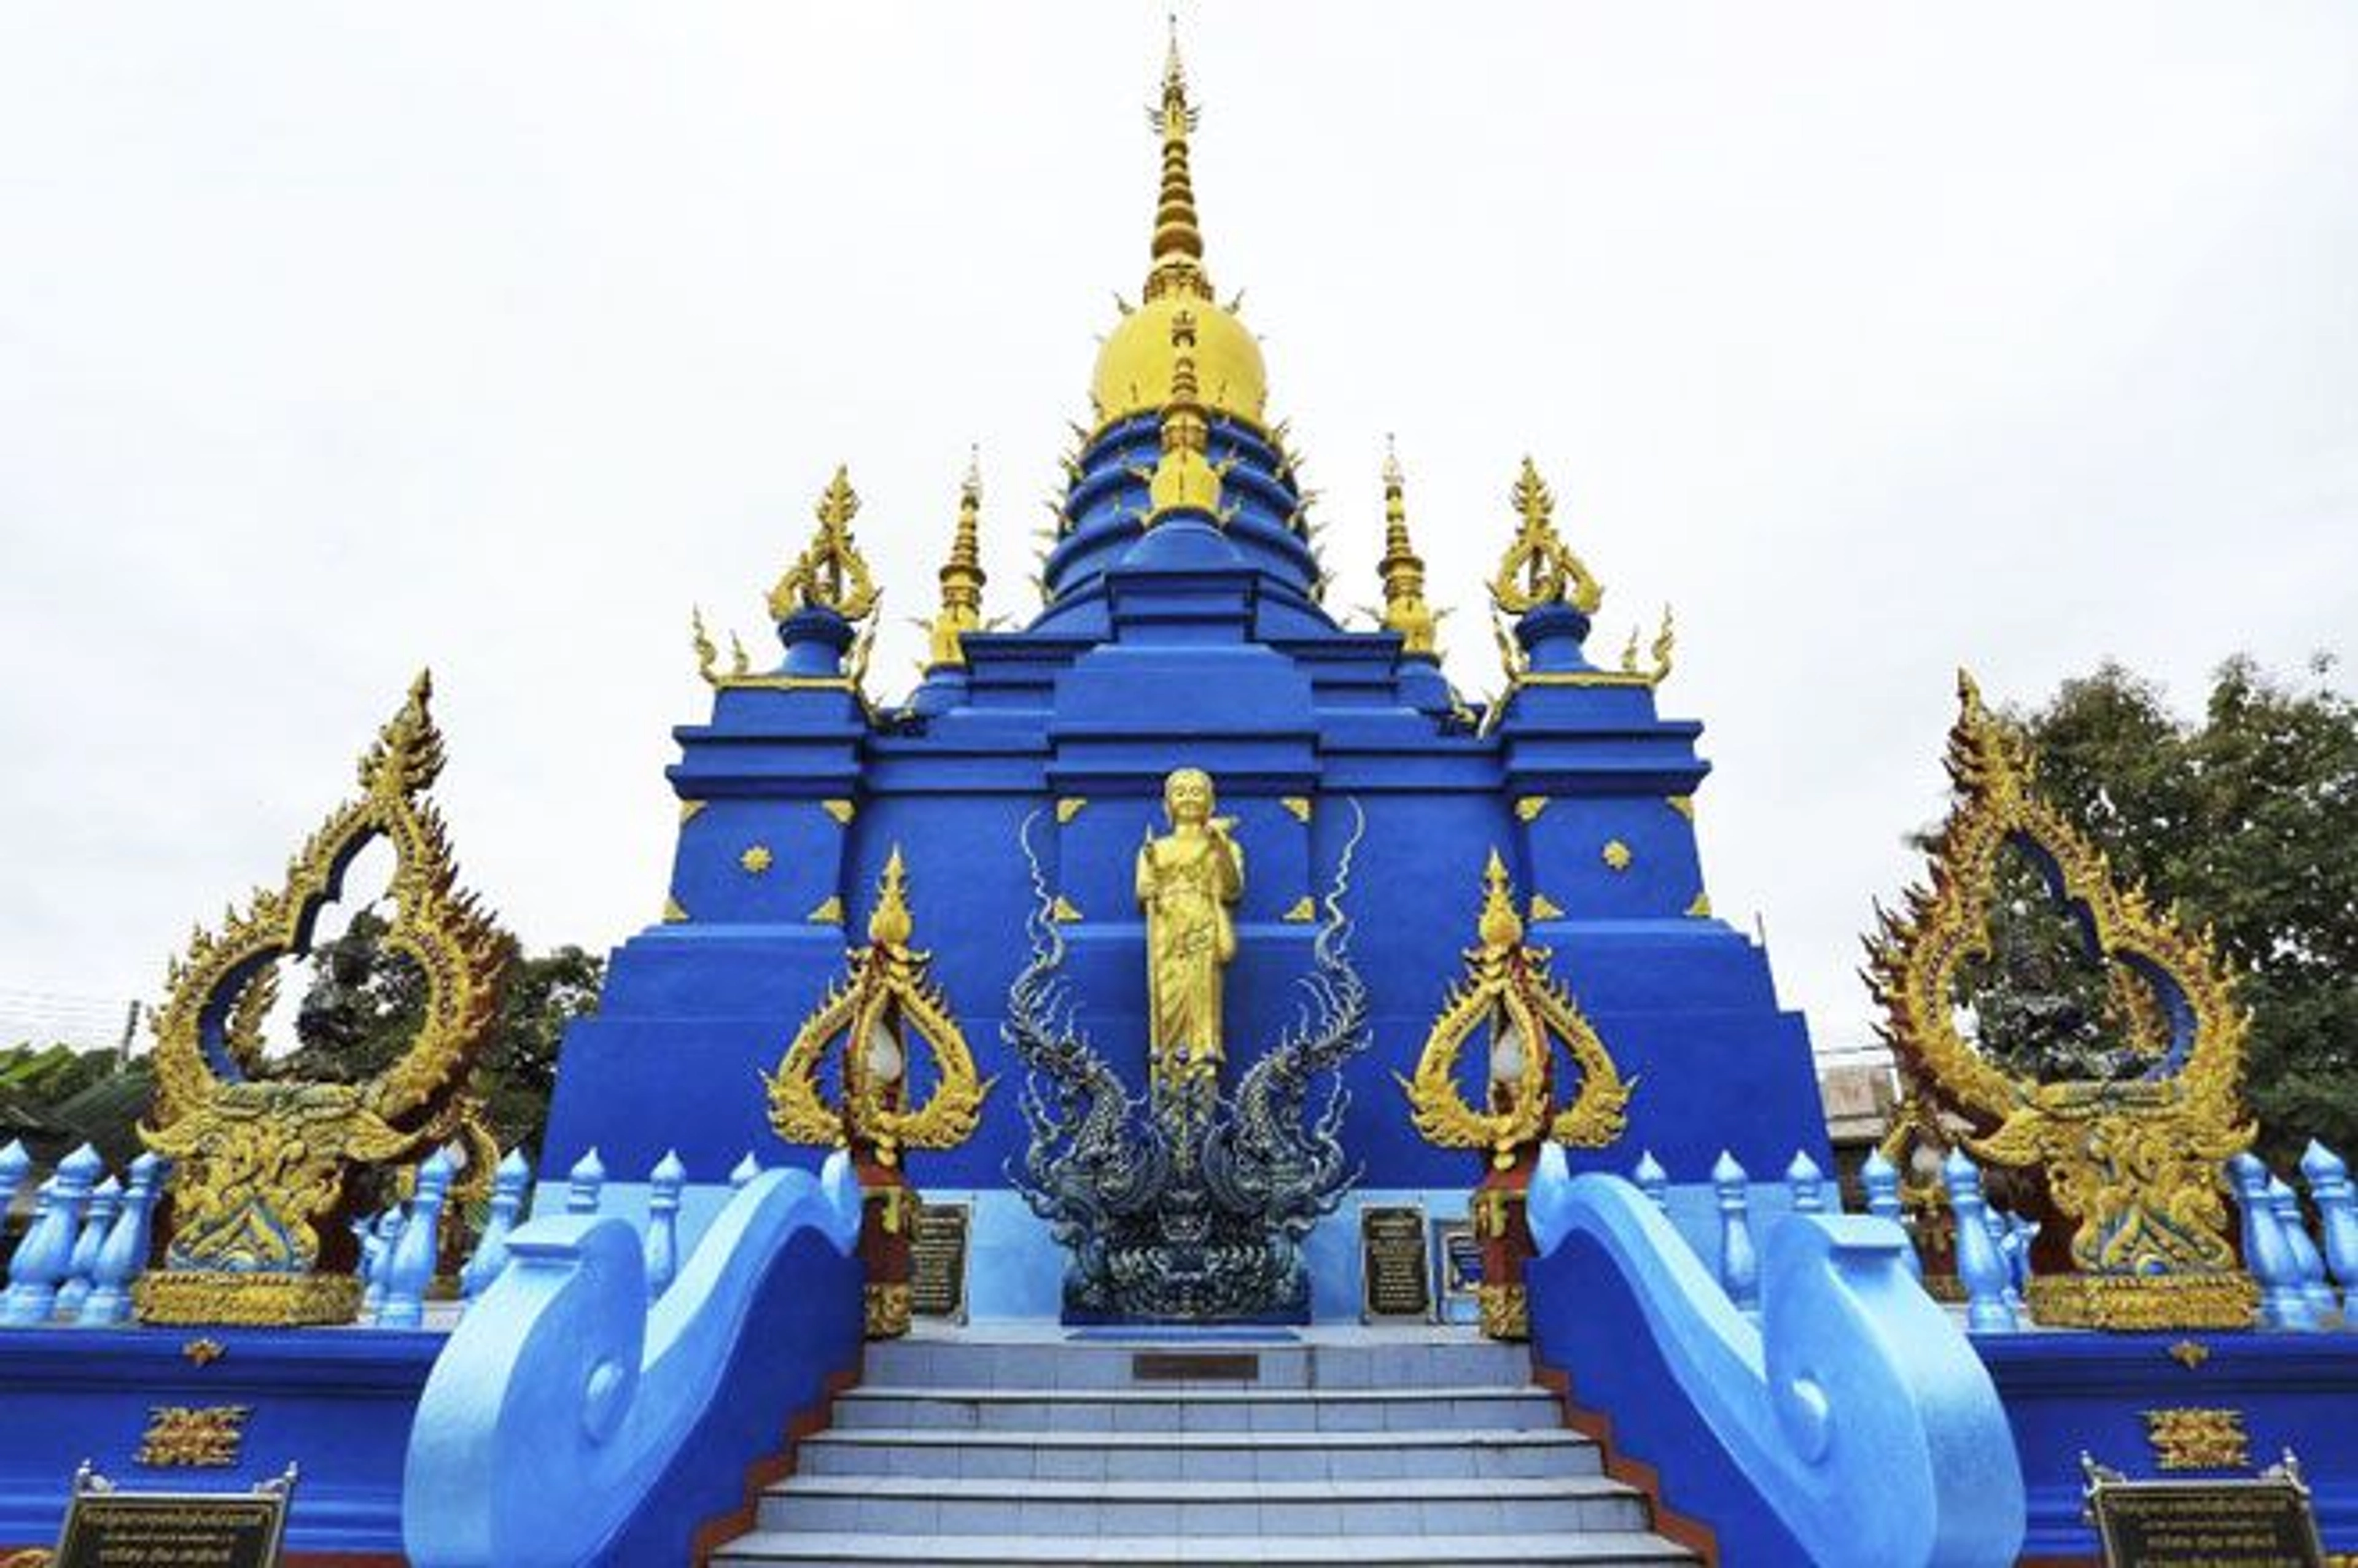 Bangkok City Pillar Shrine là một địa điểm tâm linh và văn hóa quan trọng ở trung tâm thành phố Bangkok, Thái Lan